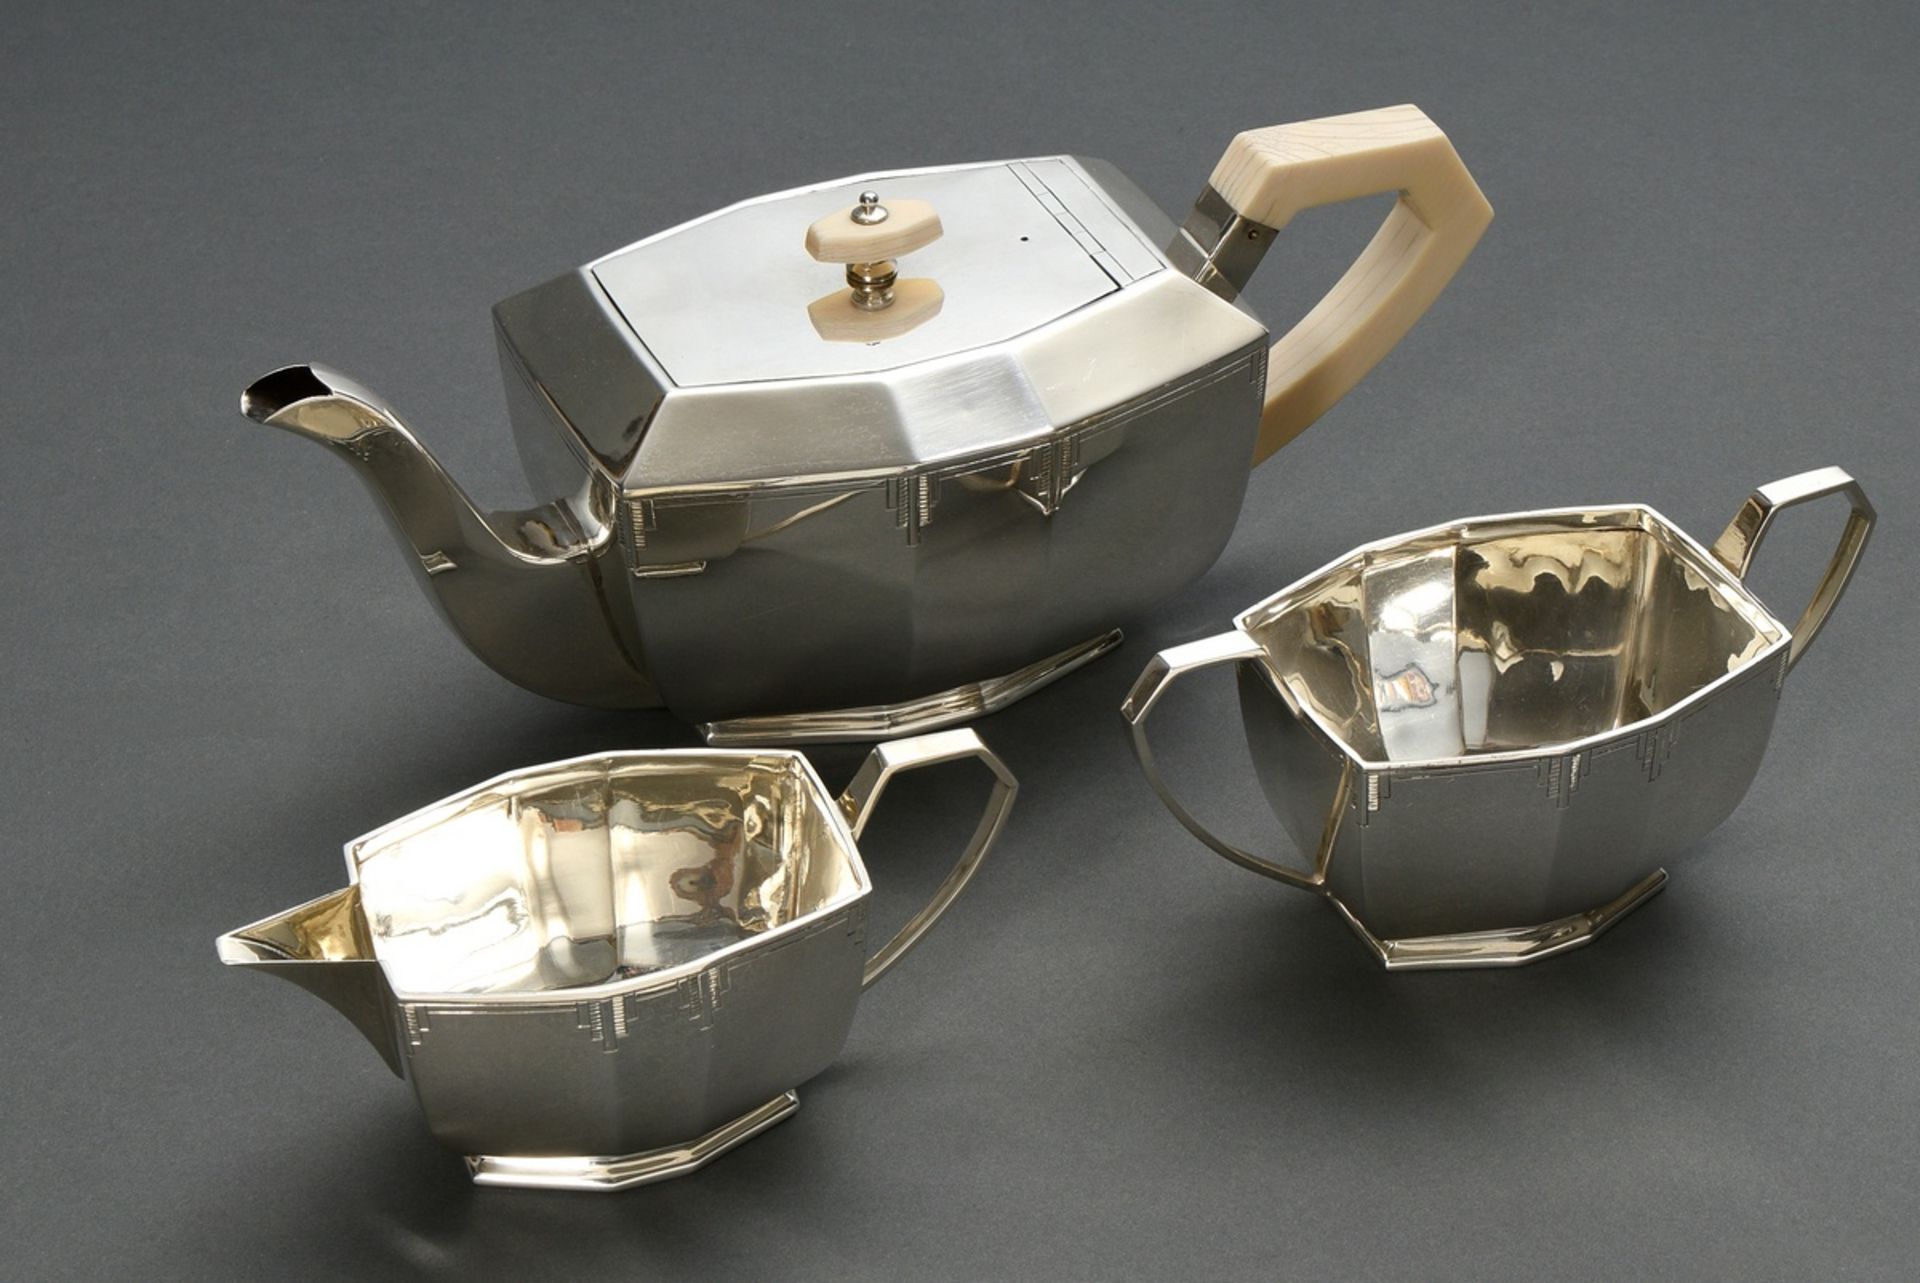 3 Teile Art Deco Teeset in geometrisch abstrahierter Form: Kanne mit Elfenbein Knauf und Handhabe s - Bild 2 aus 8